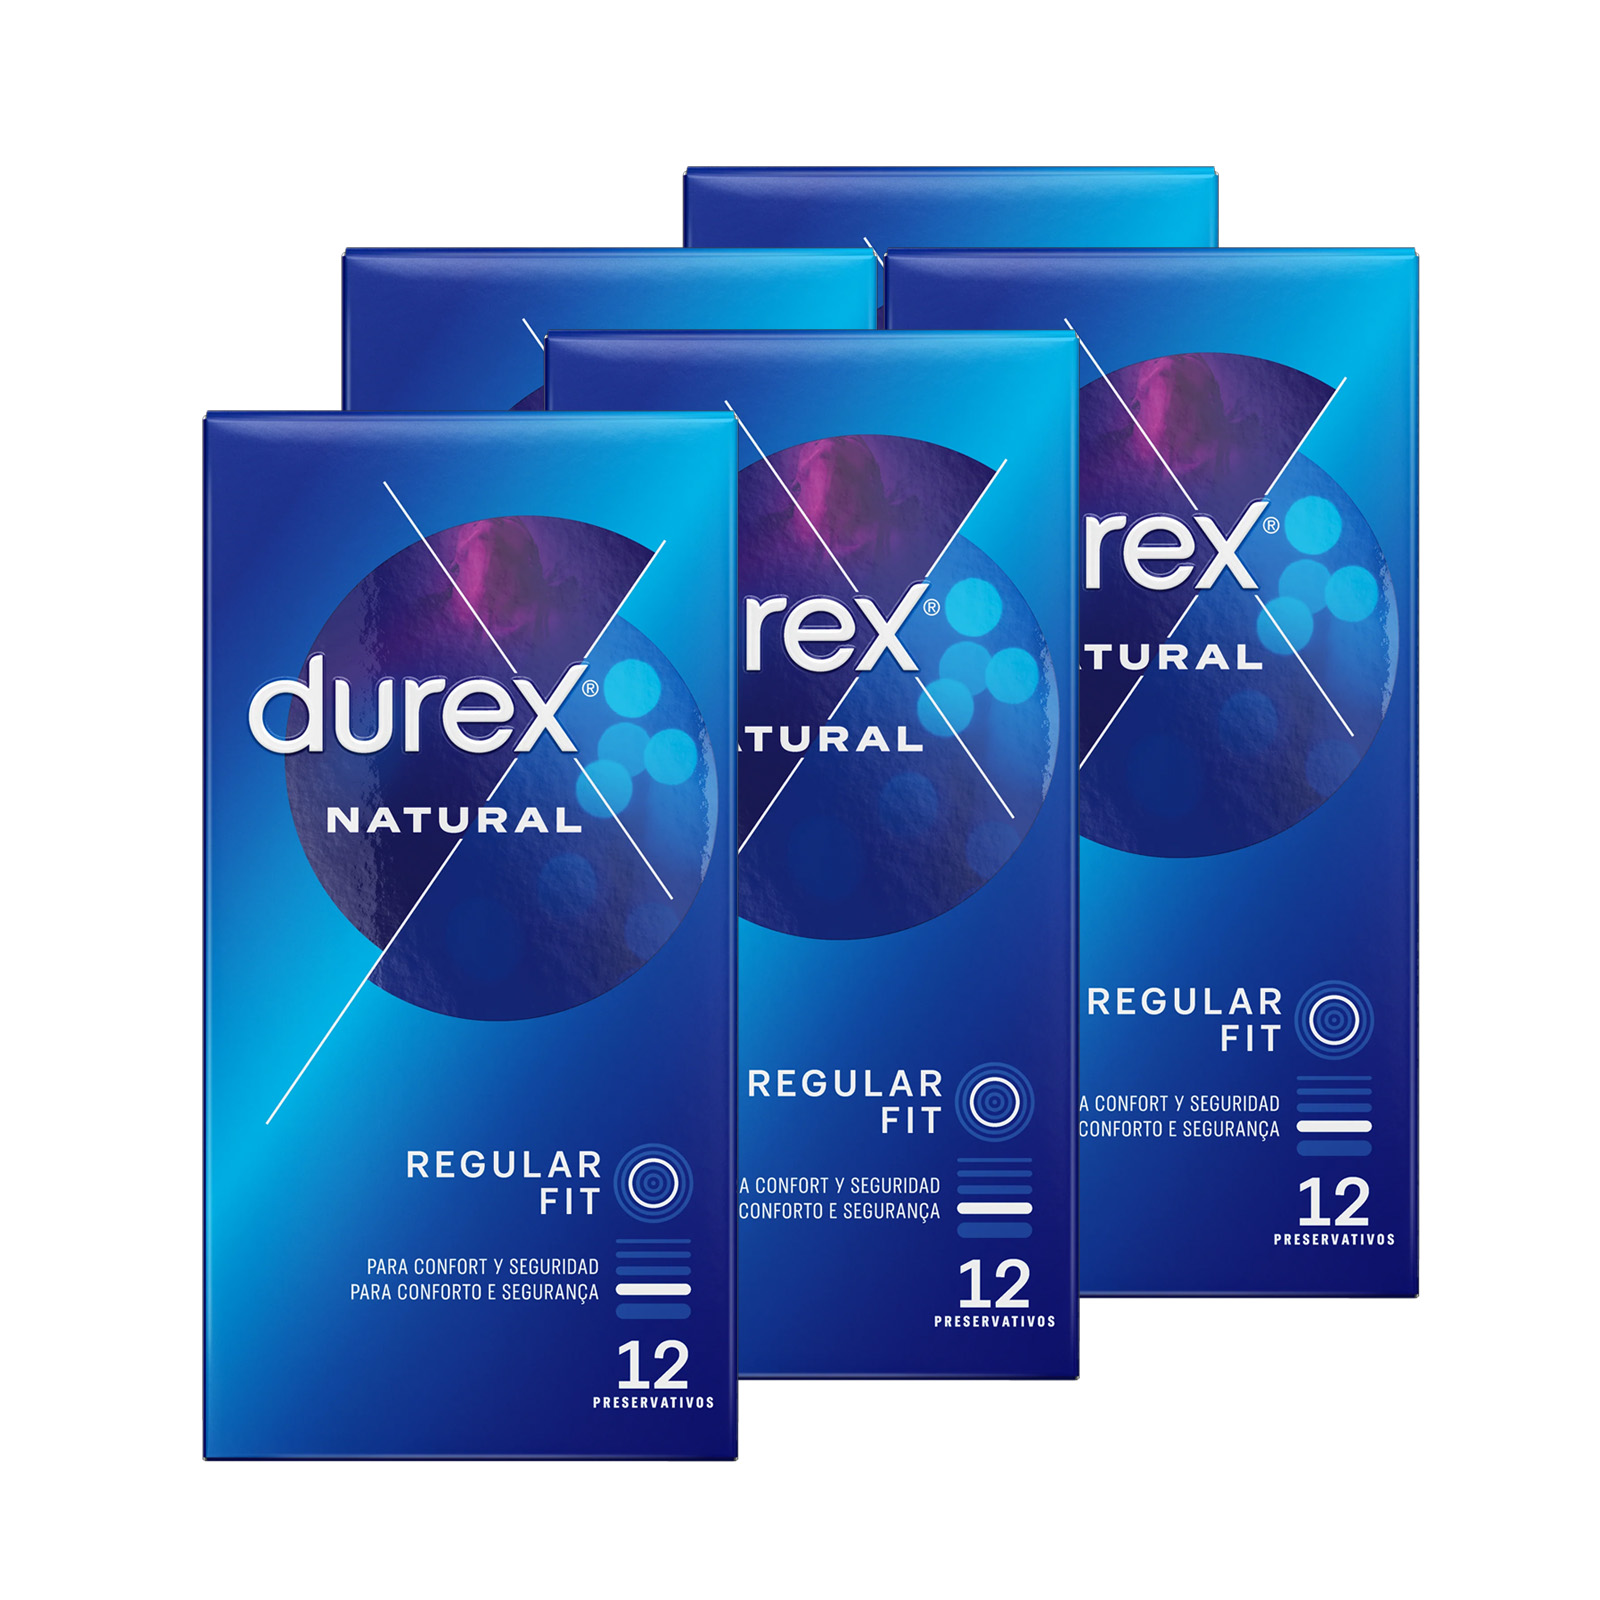 Condones Durex naturales xl 144 uds - Condones Mix